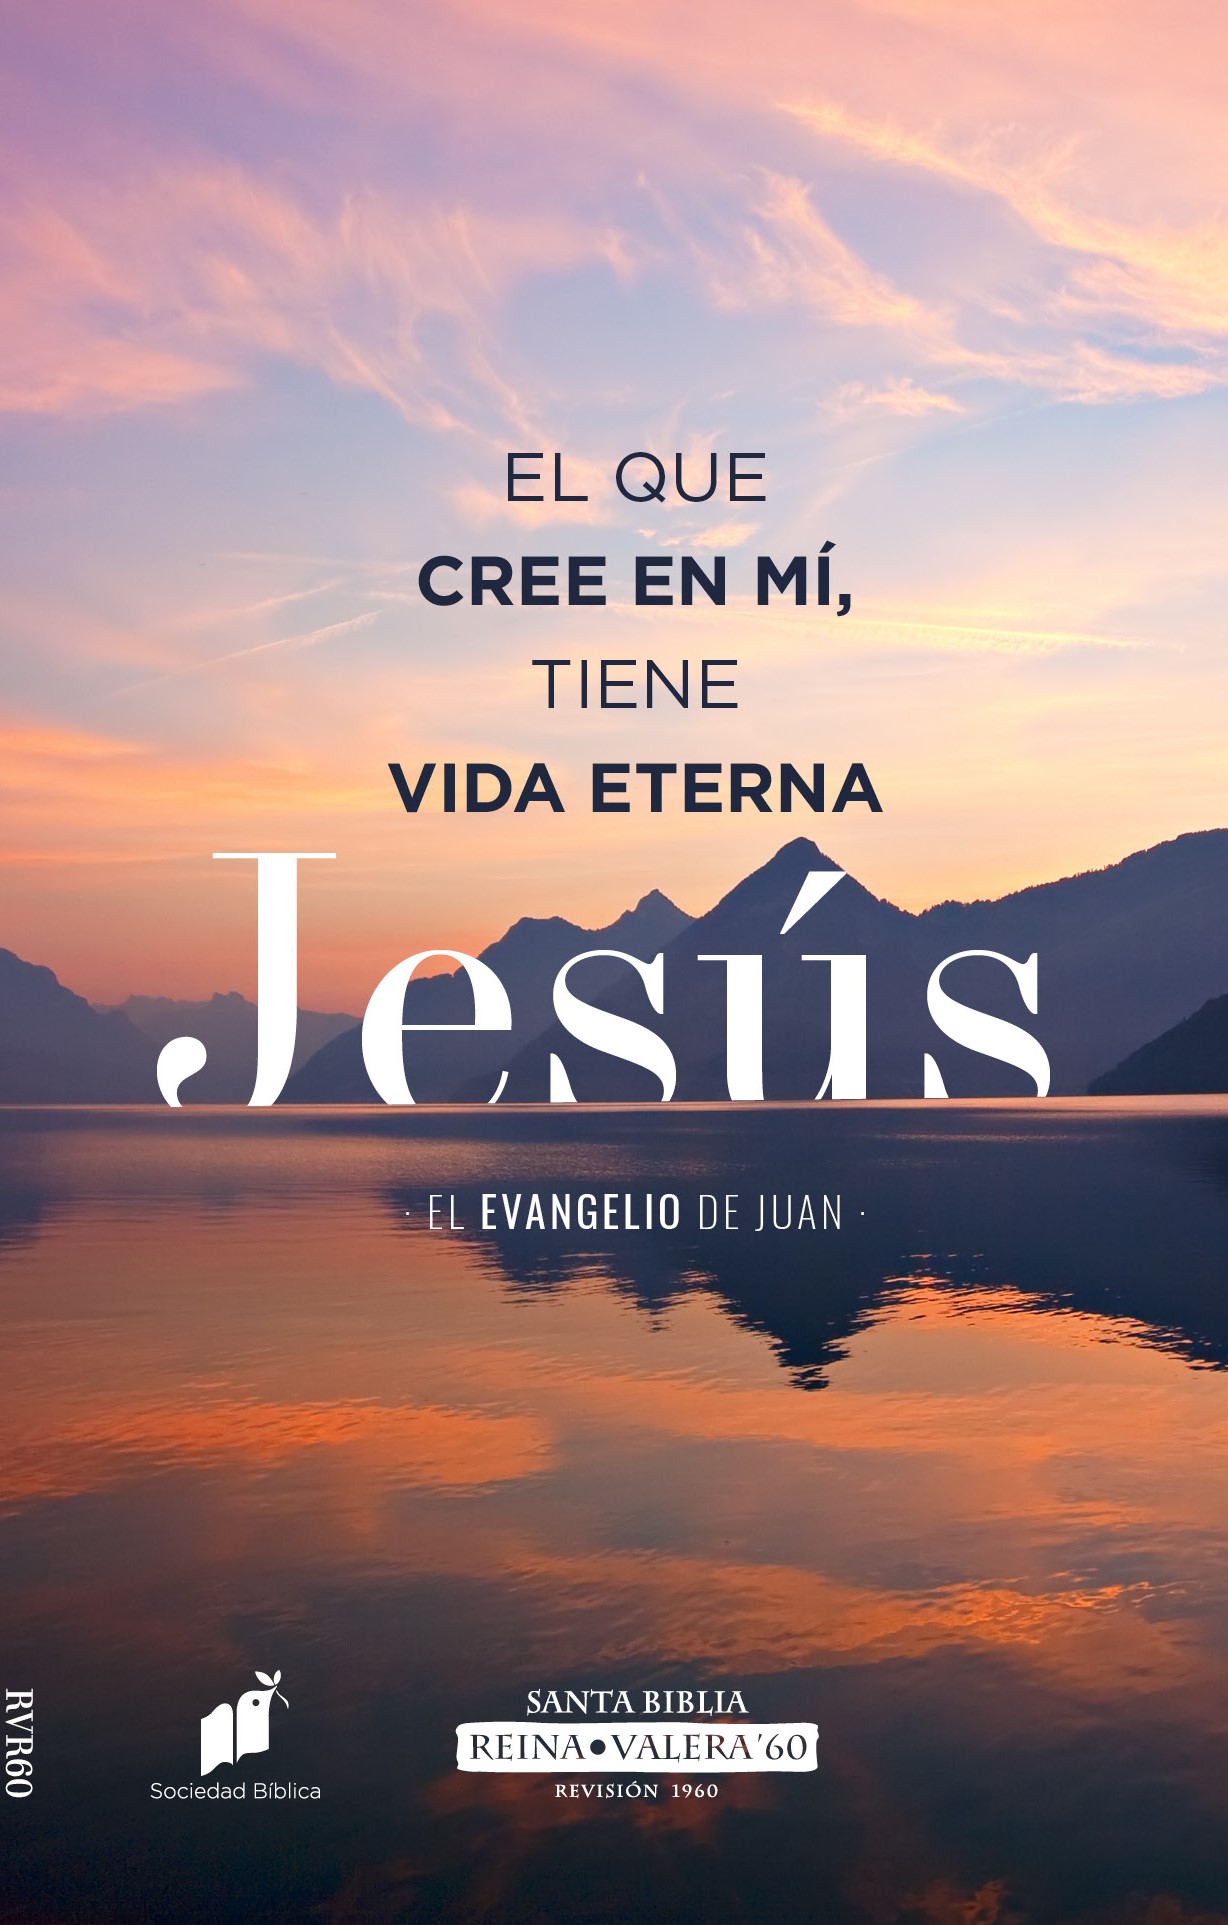 RVR60 Evangelio de Juan - Vida Eterna